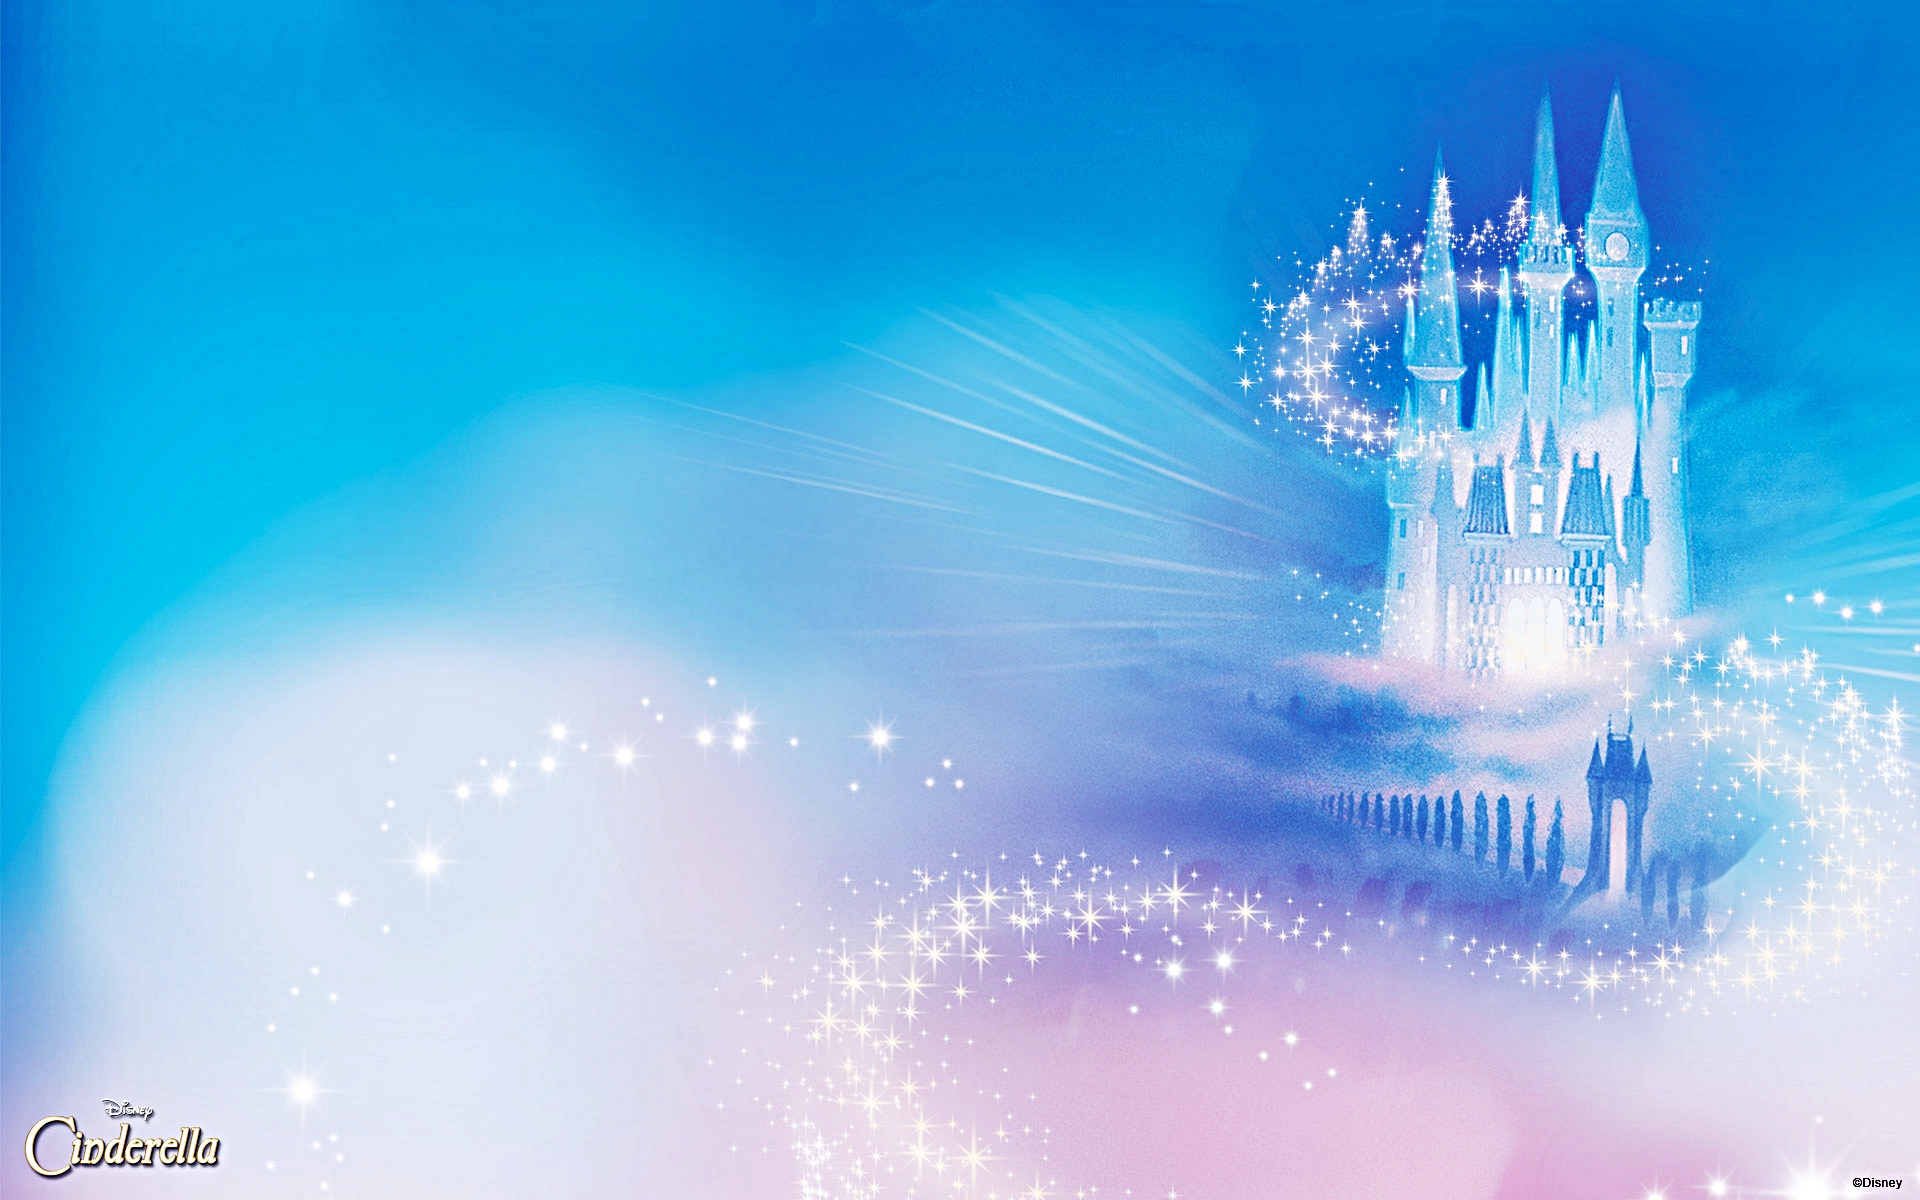 Hãy cùng chúng tôi lướt qua những hình ảnh Disney nàng Cinderella tuyệt đẹp, làm say lòng người với sự kiên trì và lòng người tốt. Luôn luôn phấn đấu để theo đuổi ước mơ của mình như Cinderella!